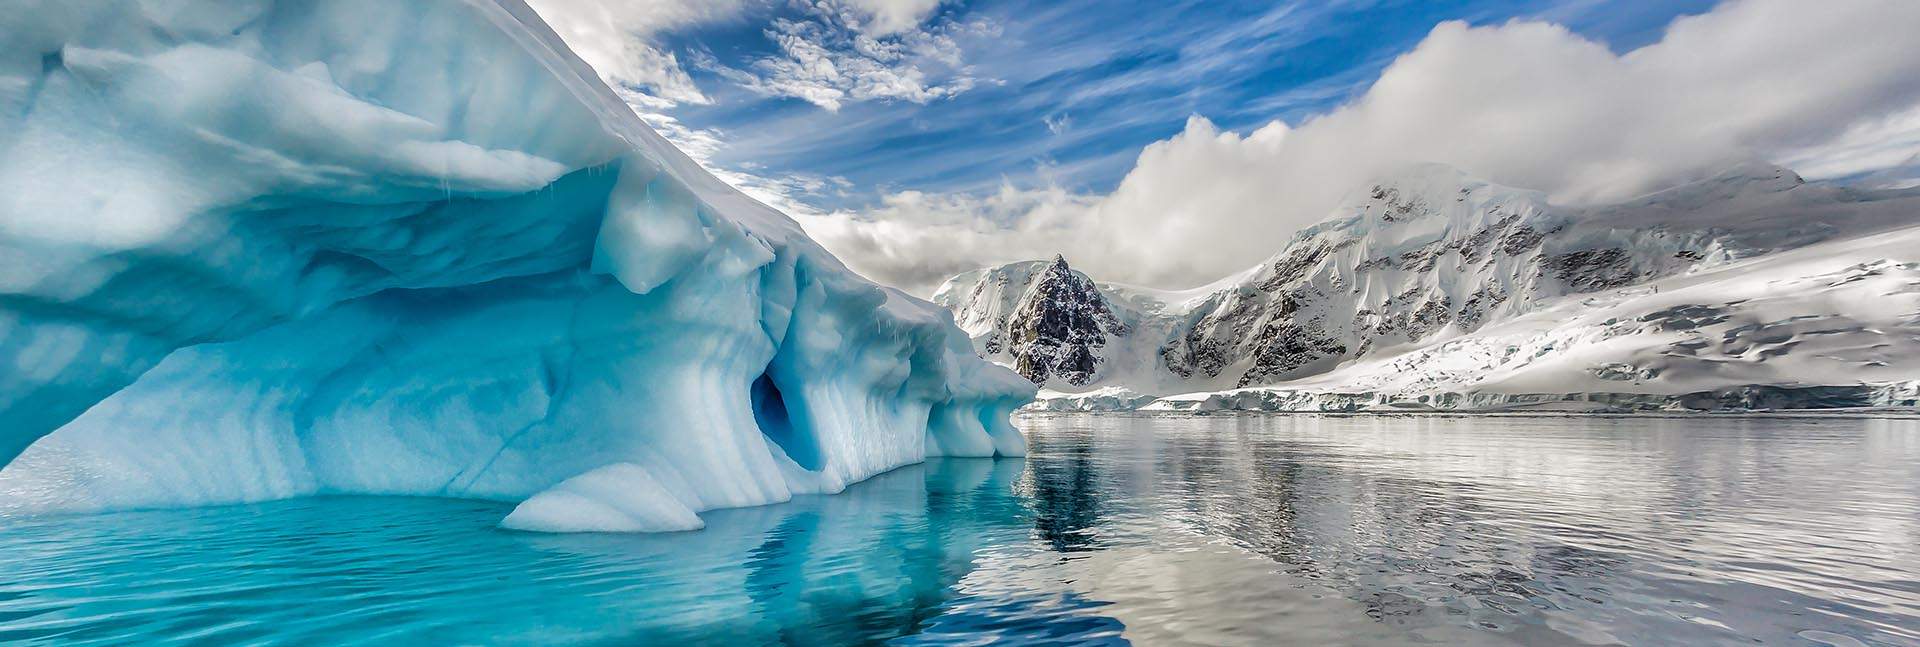 ההיסטוריה המגנטית של כדור-הארץ כתובה בקרח